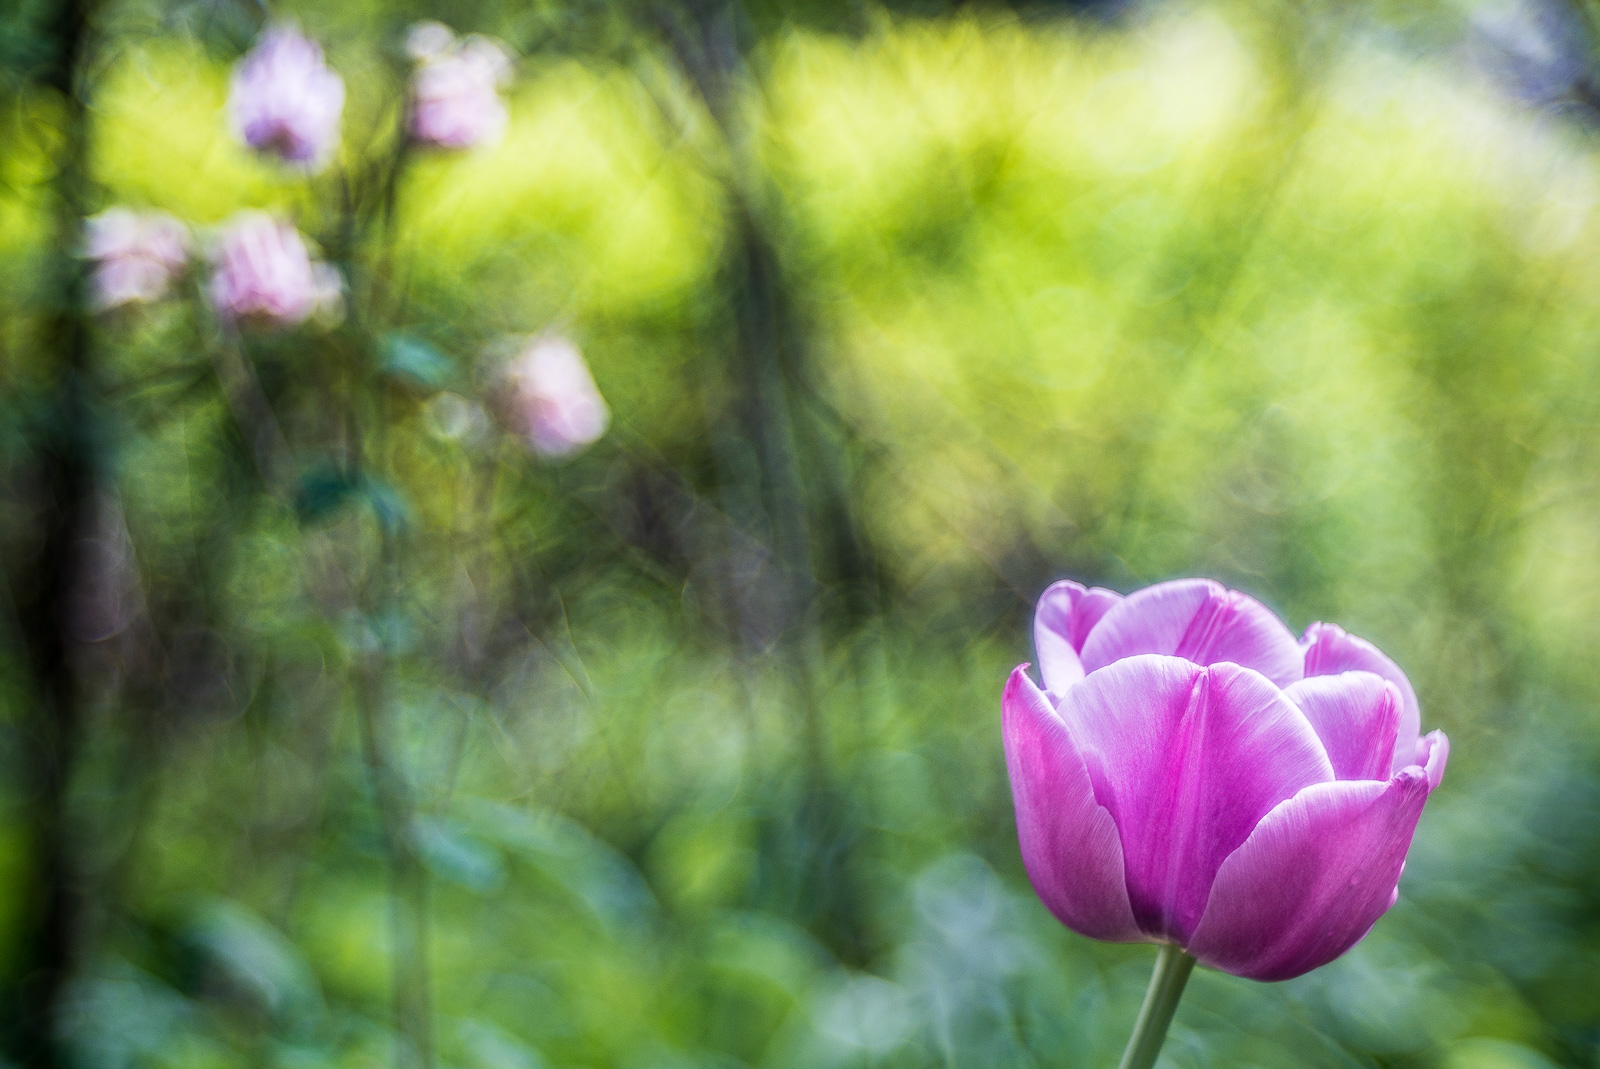 rechts vorn eine pinkfarbene Tulpe. Der Hauptteil des Bildes weich grün, diagonal gegenüber der Tulpe mehrere kleine rosa Blüten im unscharfen Bereich